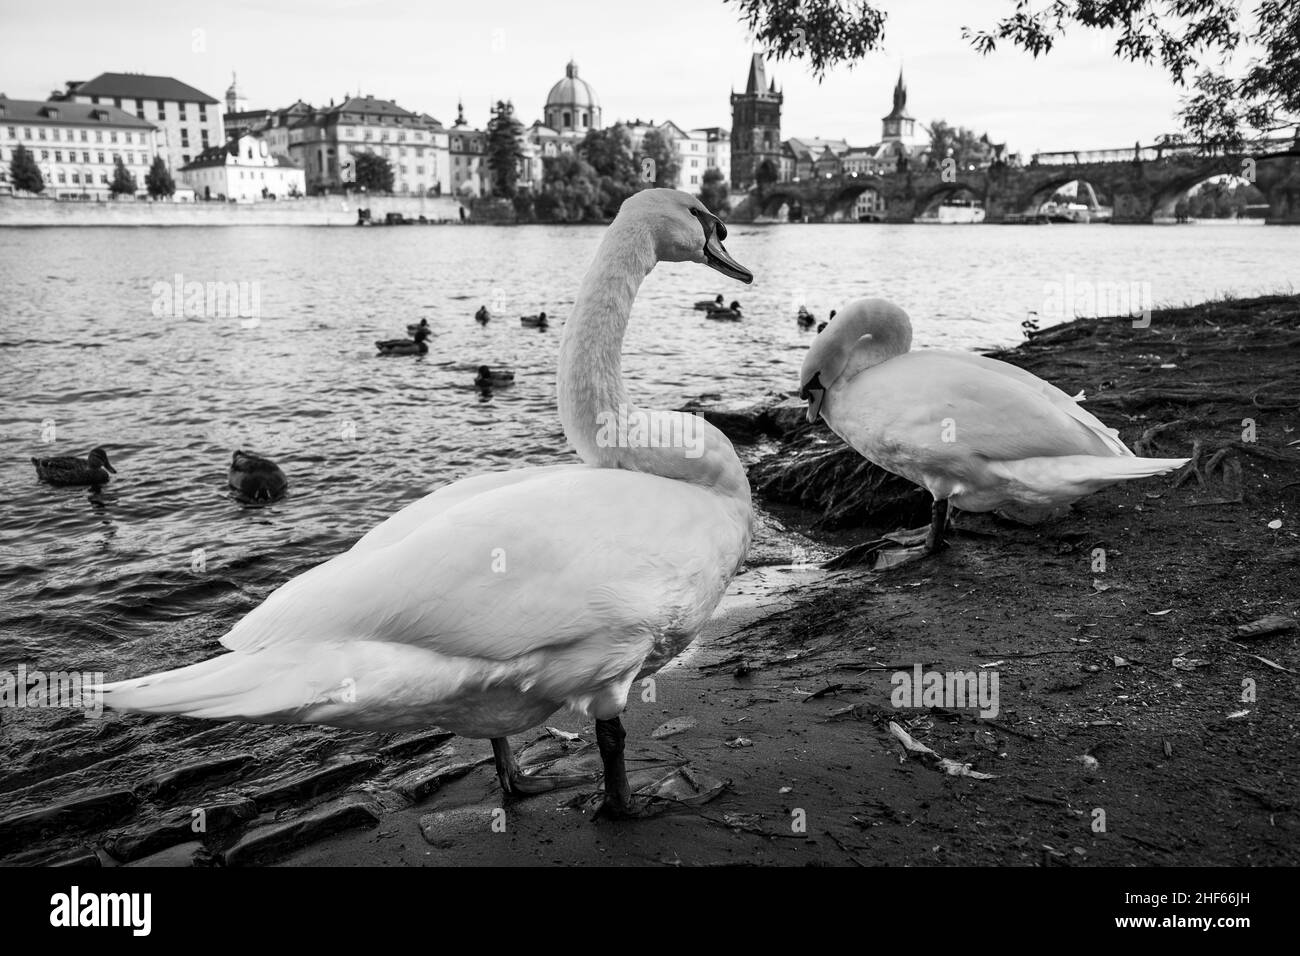 Cigni vicino al fiume Moldava nella città di Praga, Repubblica Ceca. Fotografia in bianco e nero, paesaggio urbano Foto Stock